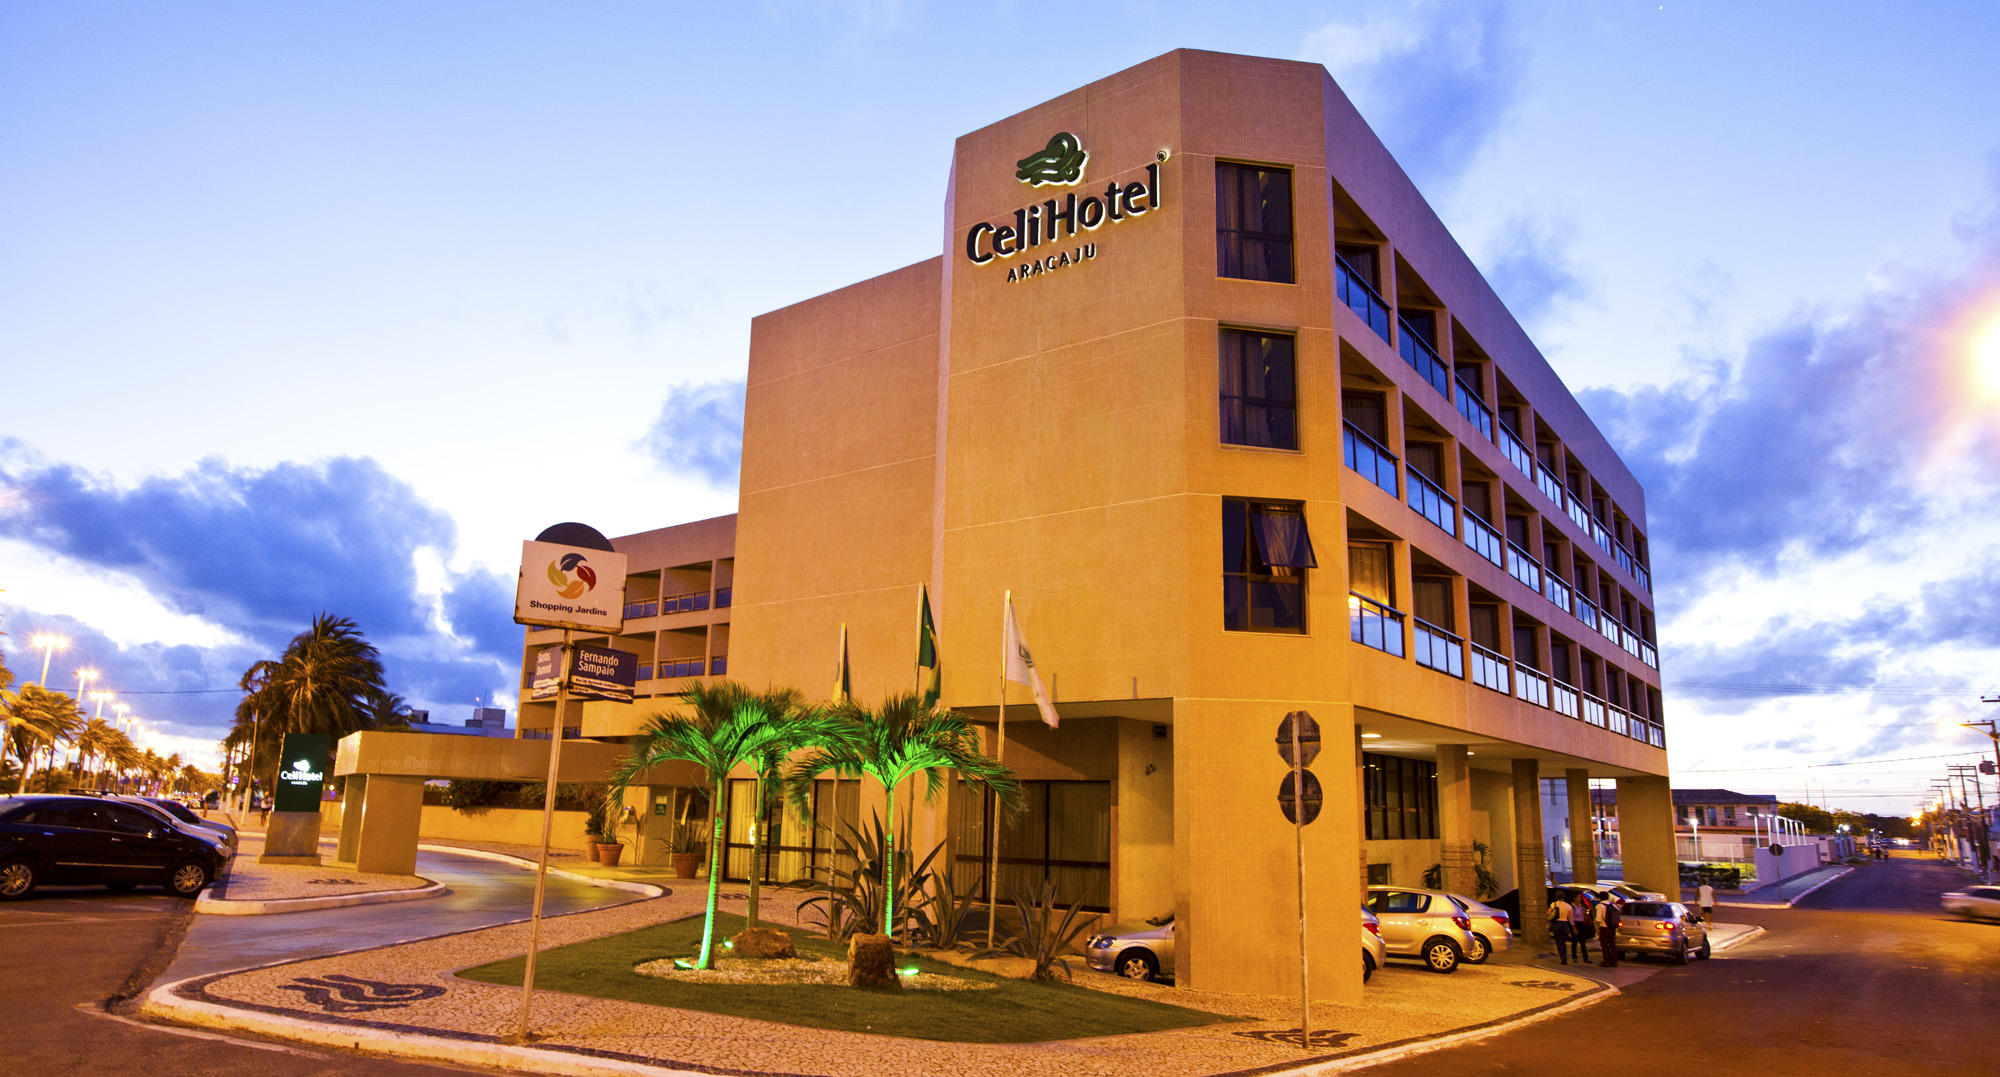 Hotéis em Aracaju, Celi Hotel, Hotel Celi, Hotel Celi Aracaju, Fotos de Aracaju, Viajar, Hospedagem em Aracaju, Lugar Perfeito